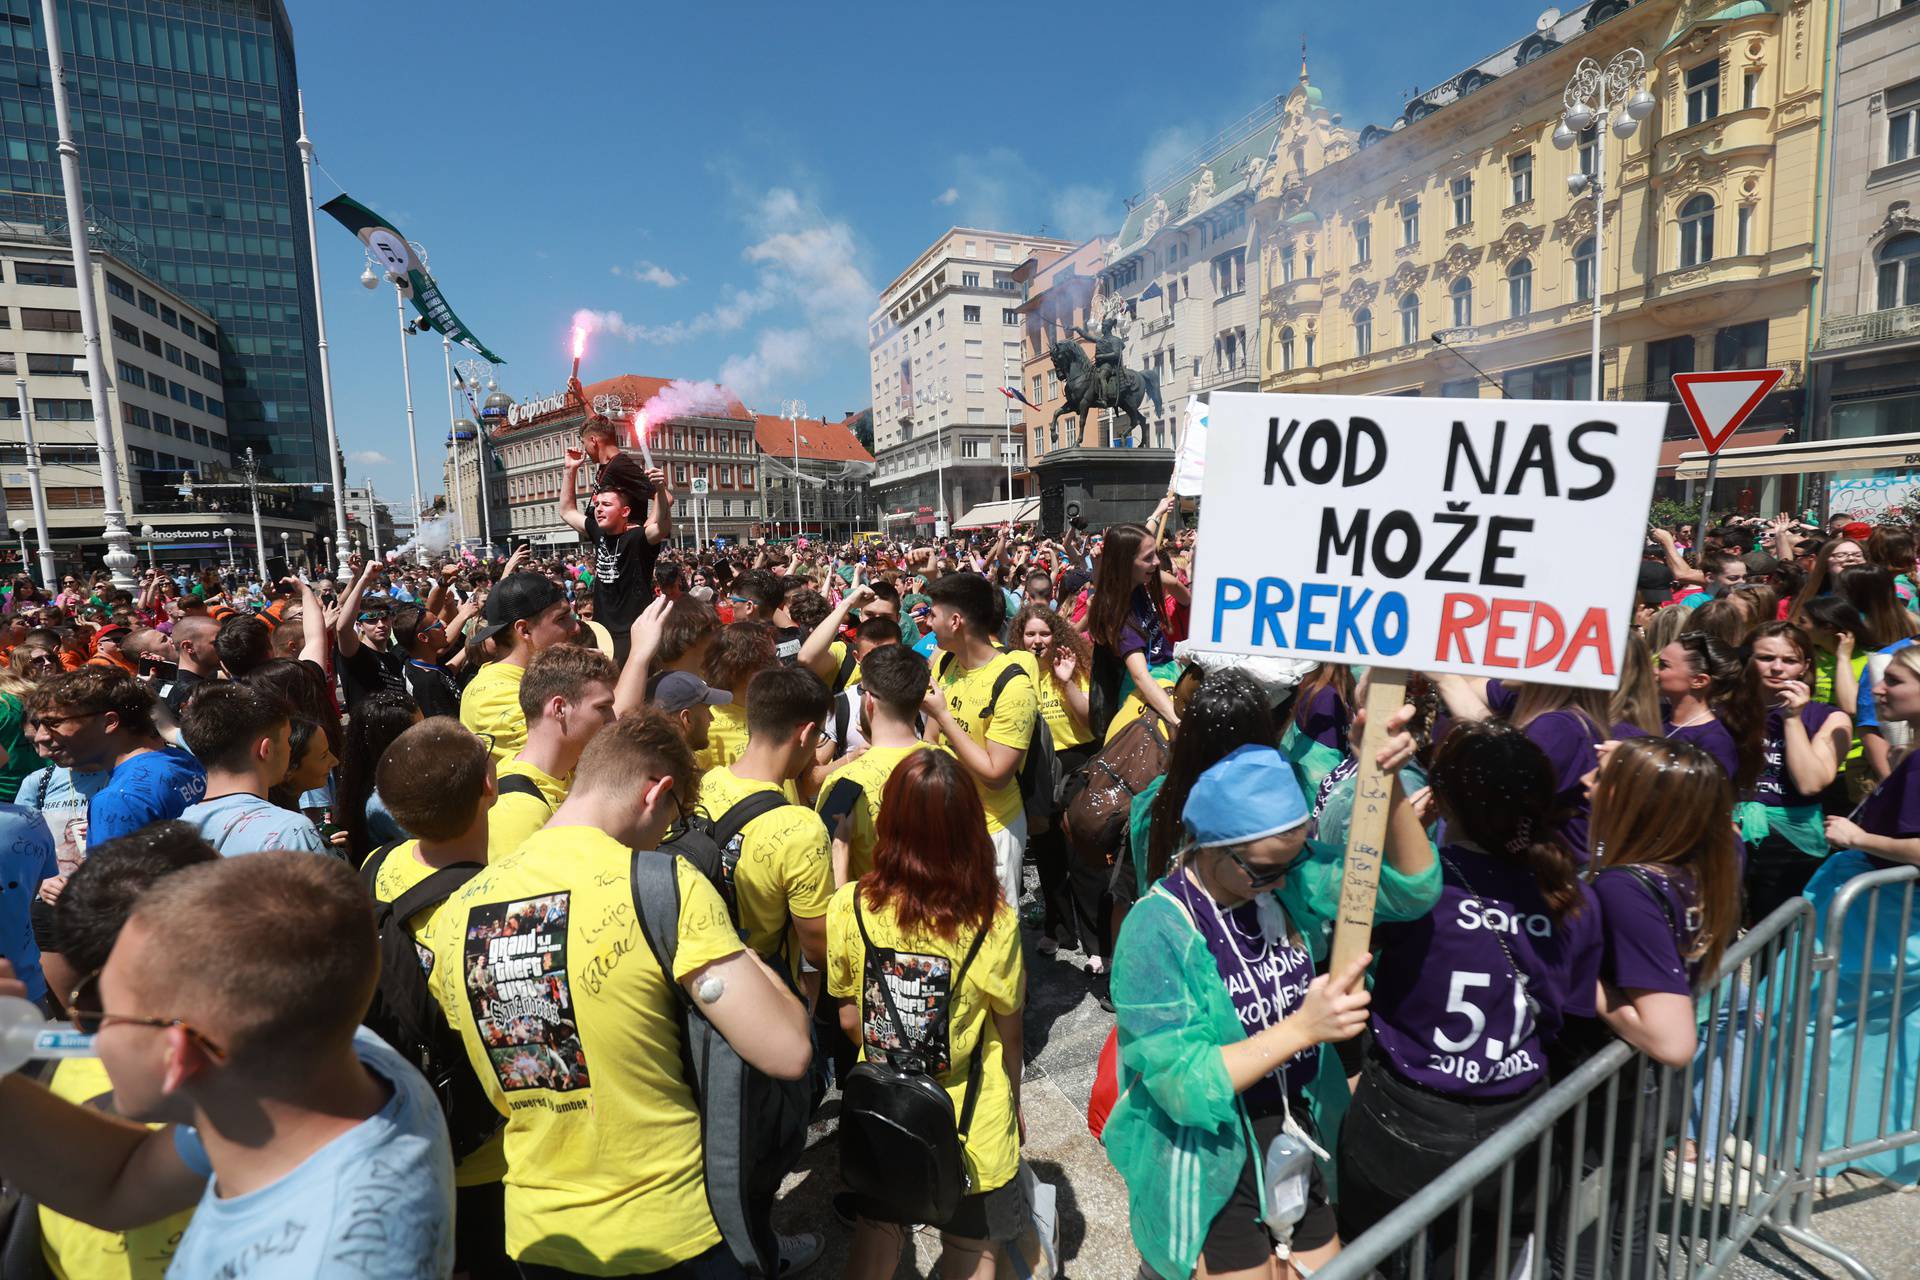 Zagreb: Norijada na  Trgu bana Josipa Jelačića